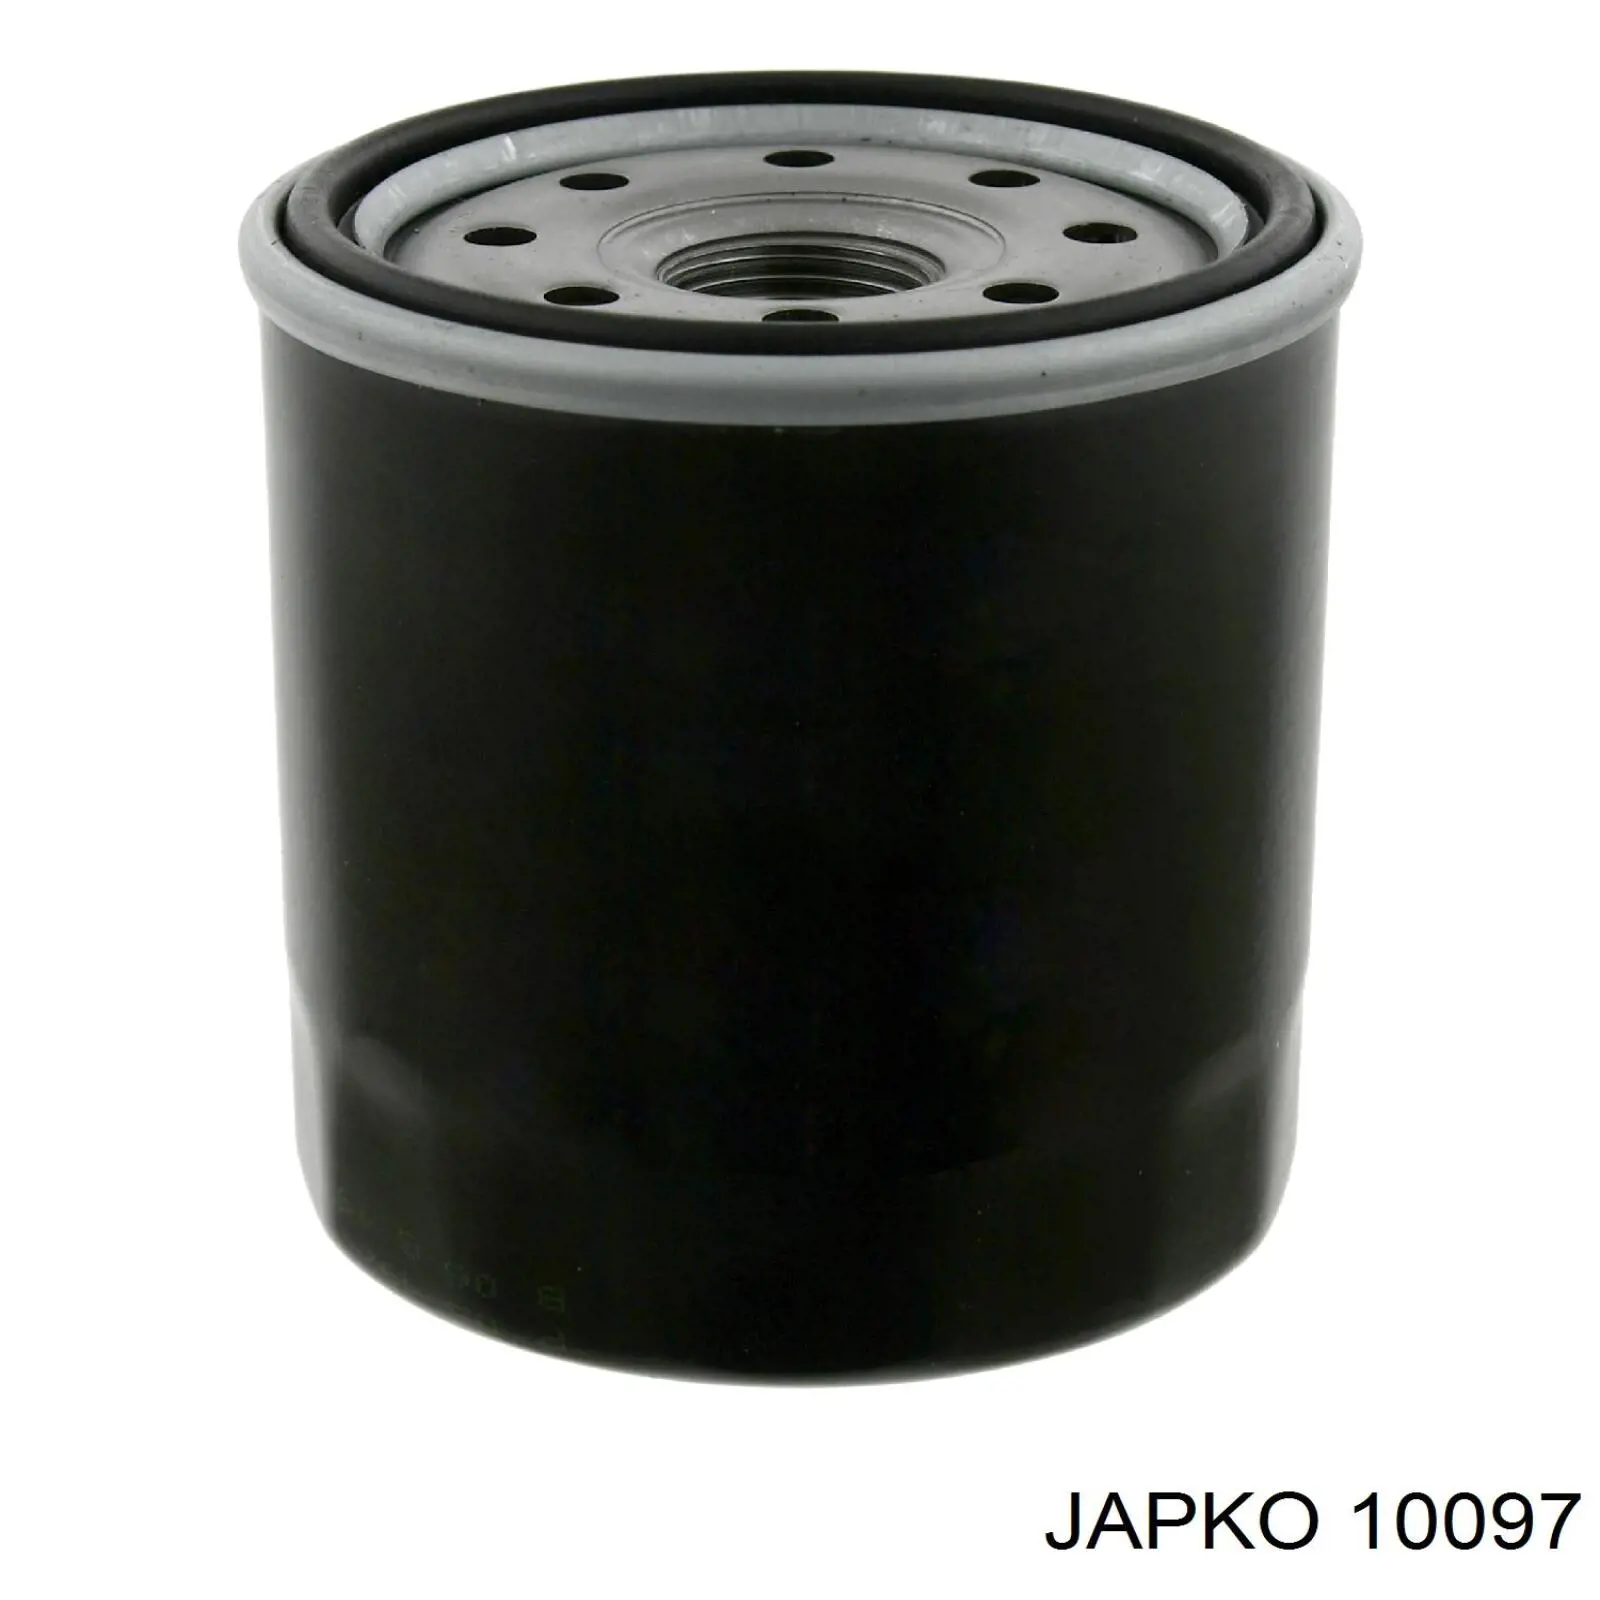 10097 Japko filtro de aceite